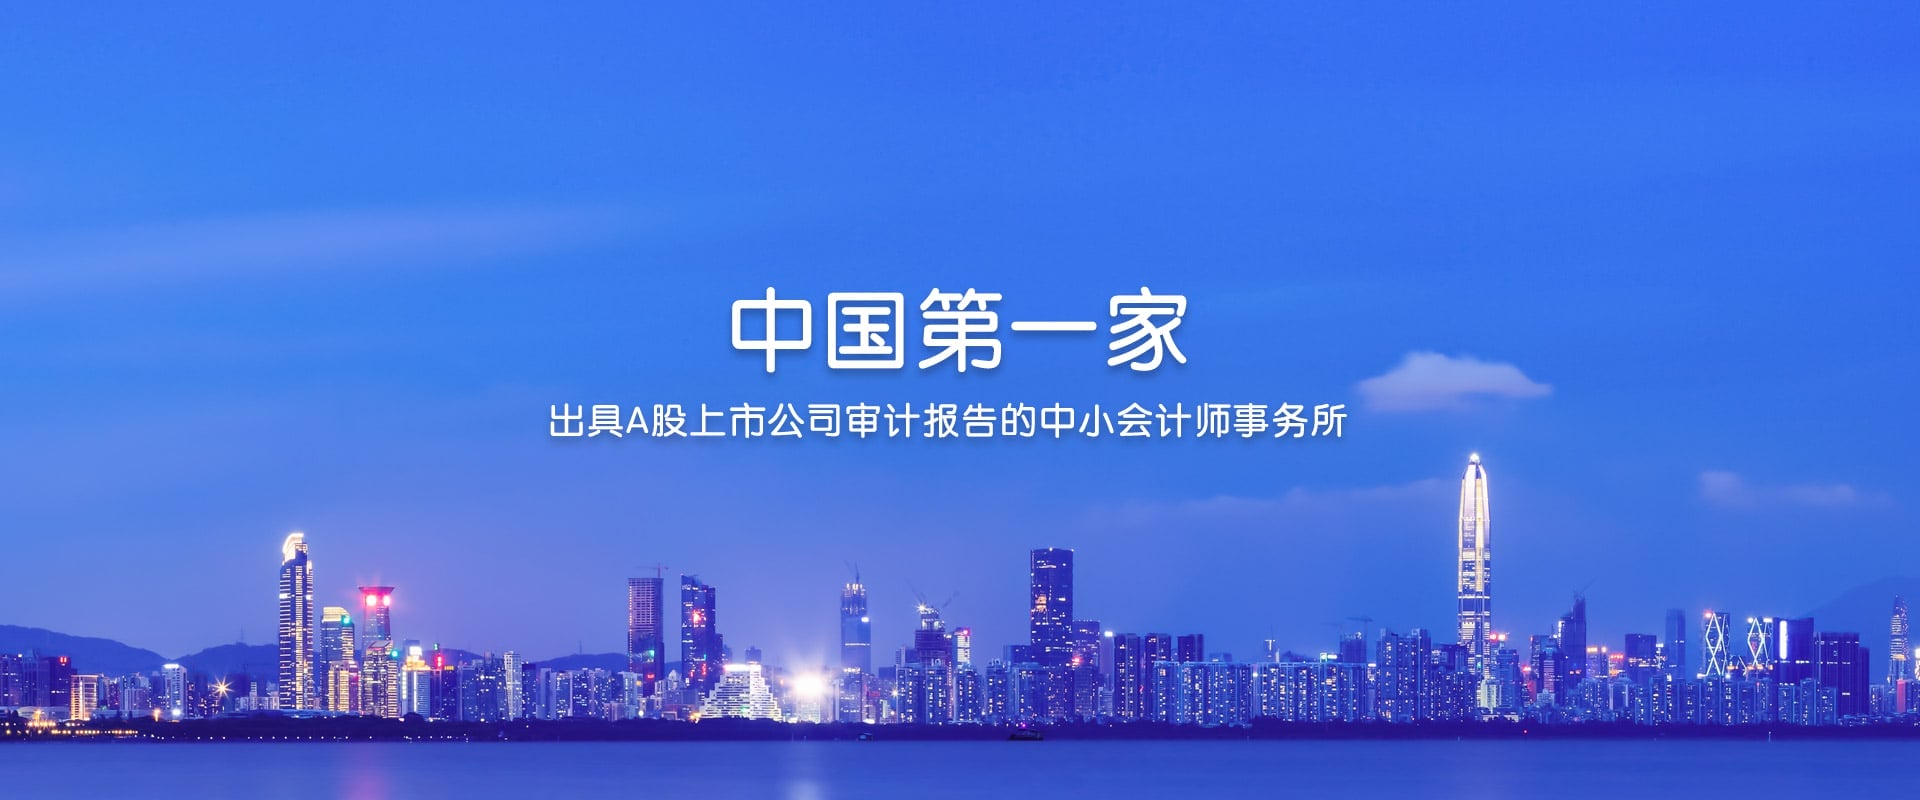 深圳堂堂新年第一天增加一家上市公司-000587金洲慈航